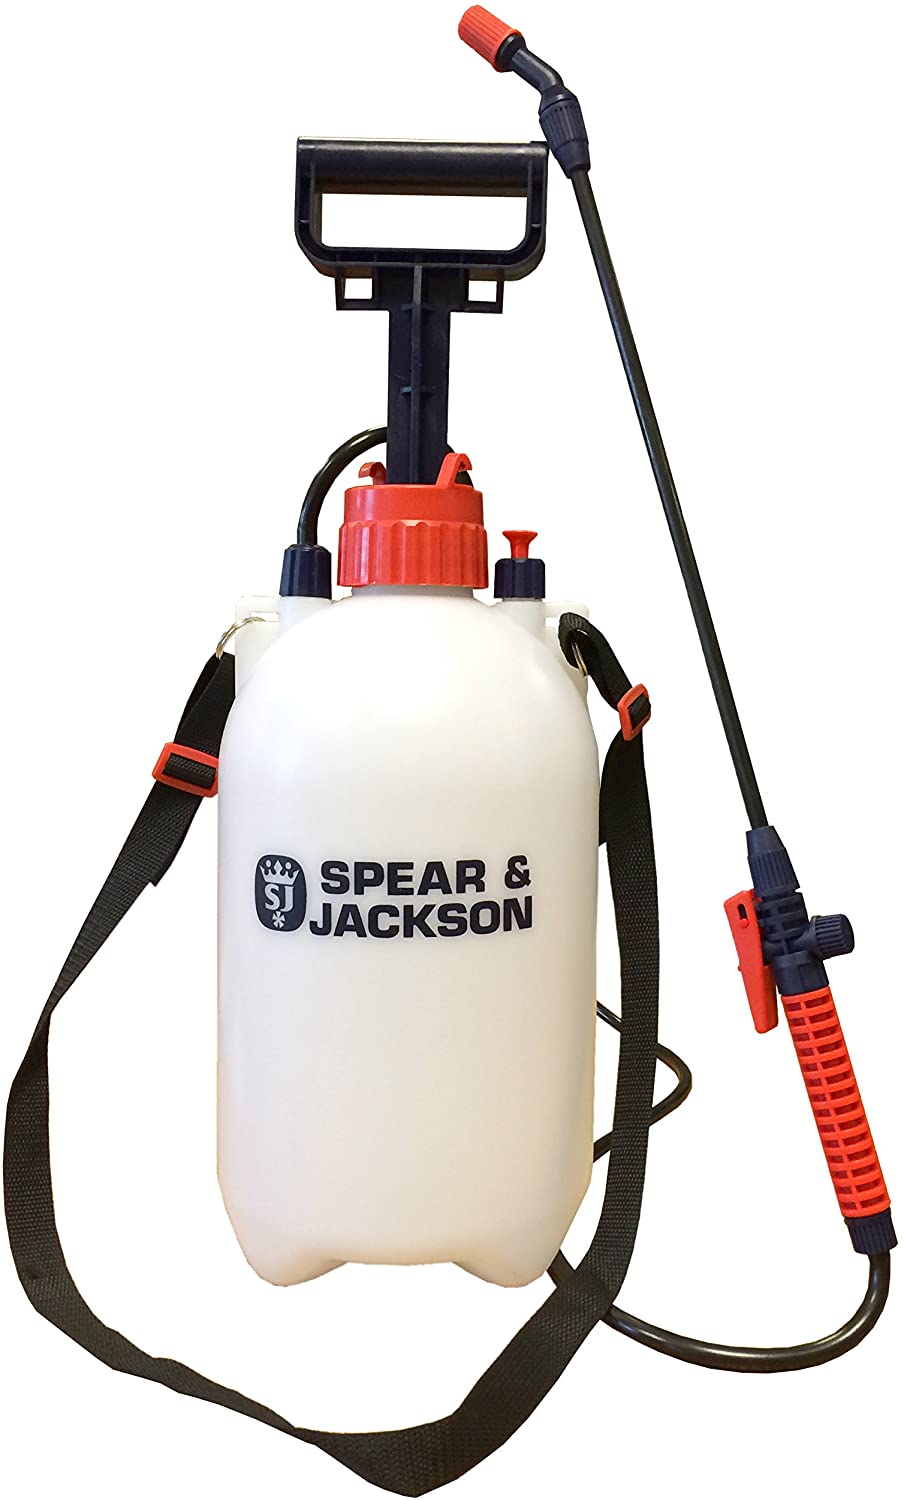 Spear-&-Jackson-Pump-Action-Pressure-Sprayer-5L